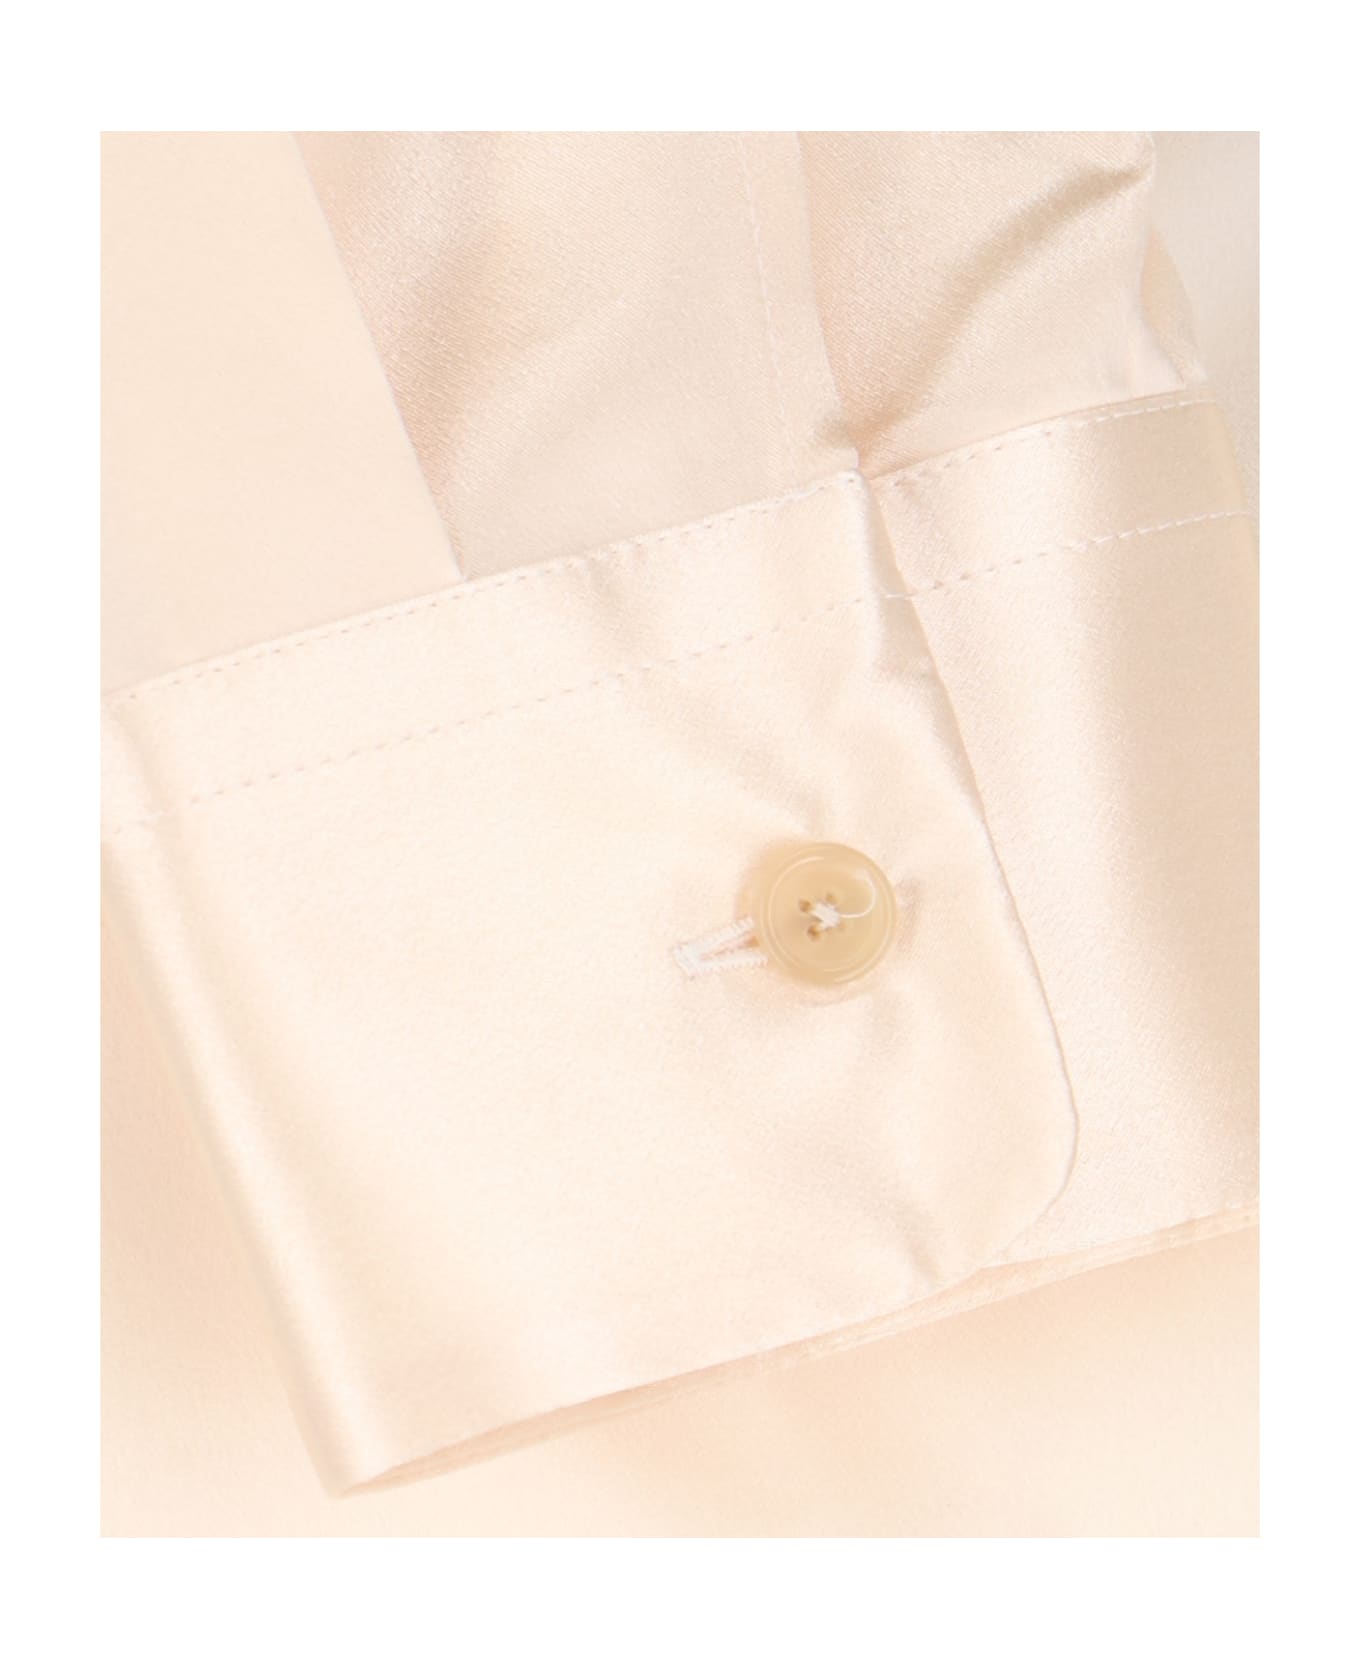 Khaite Silk Shirt - Crema